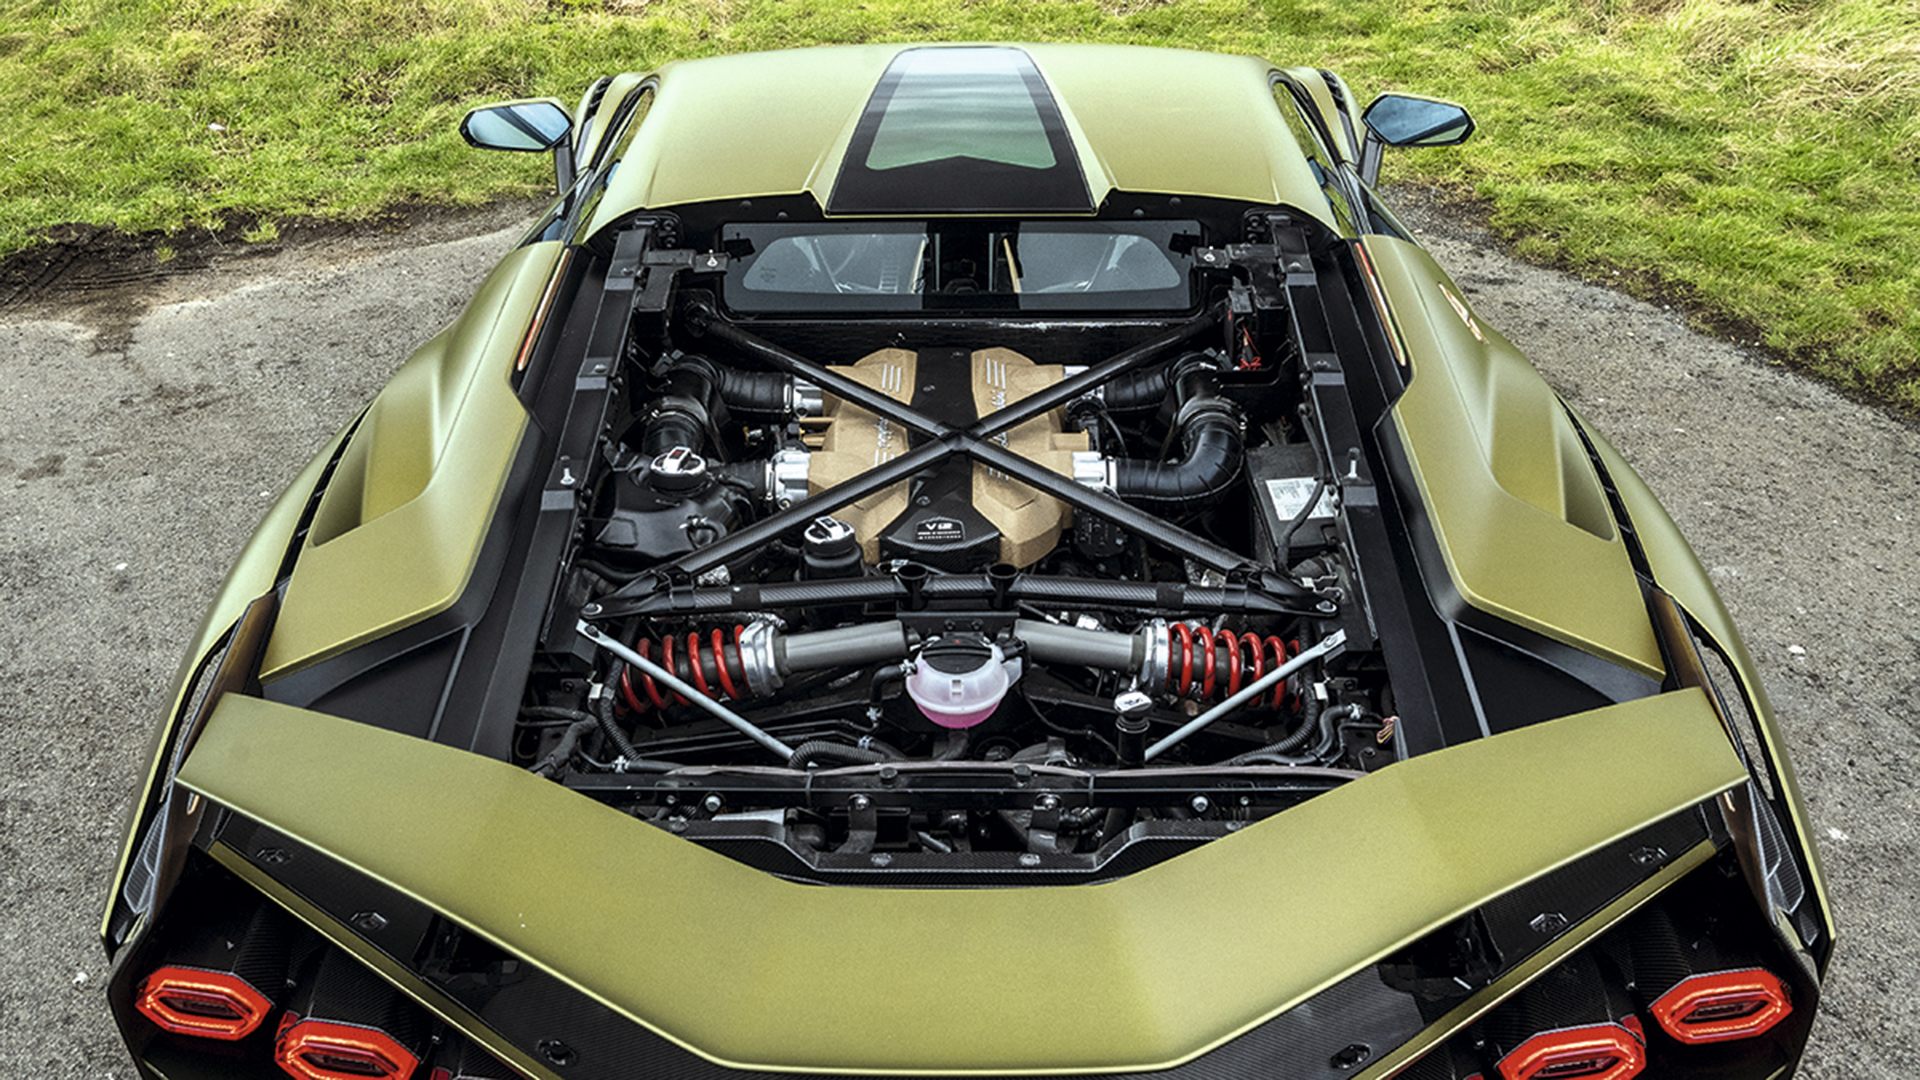 El motor de Lamborghini es el V12. Una conversión a electricidad, terminaría con ese legado de su creador. Los e-fuels pueden salvarlo y están dispuestos a esperar su desarrollo